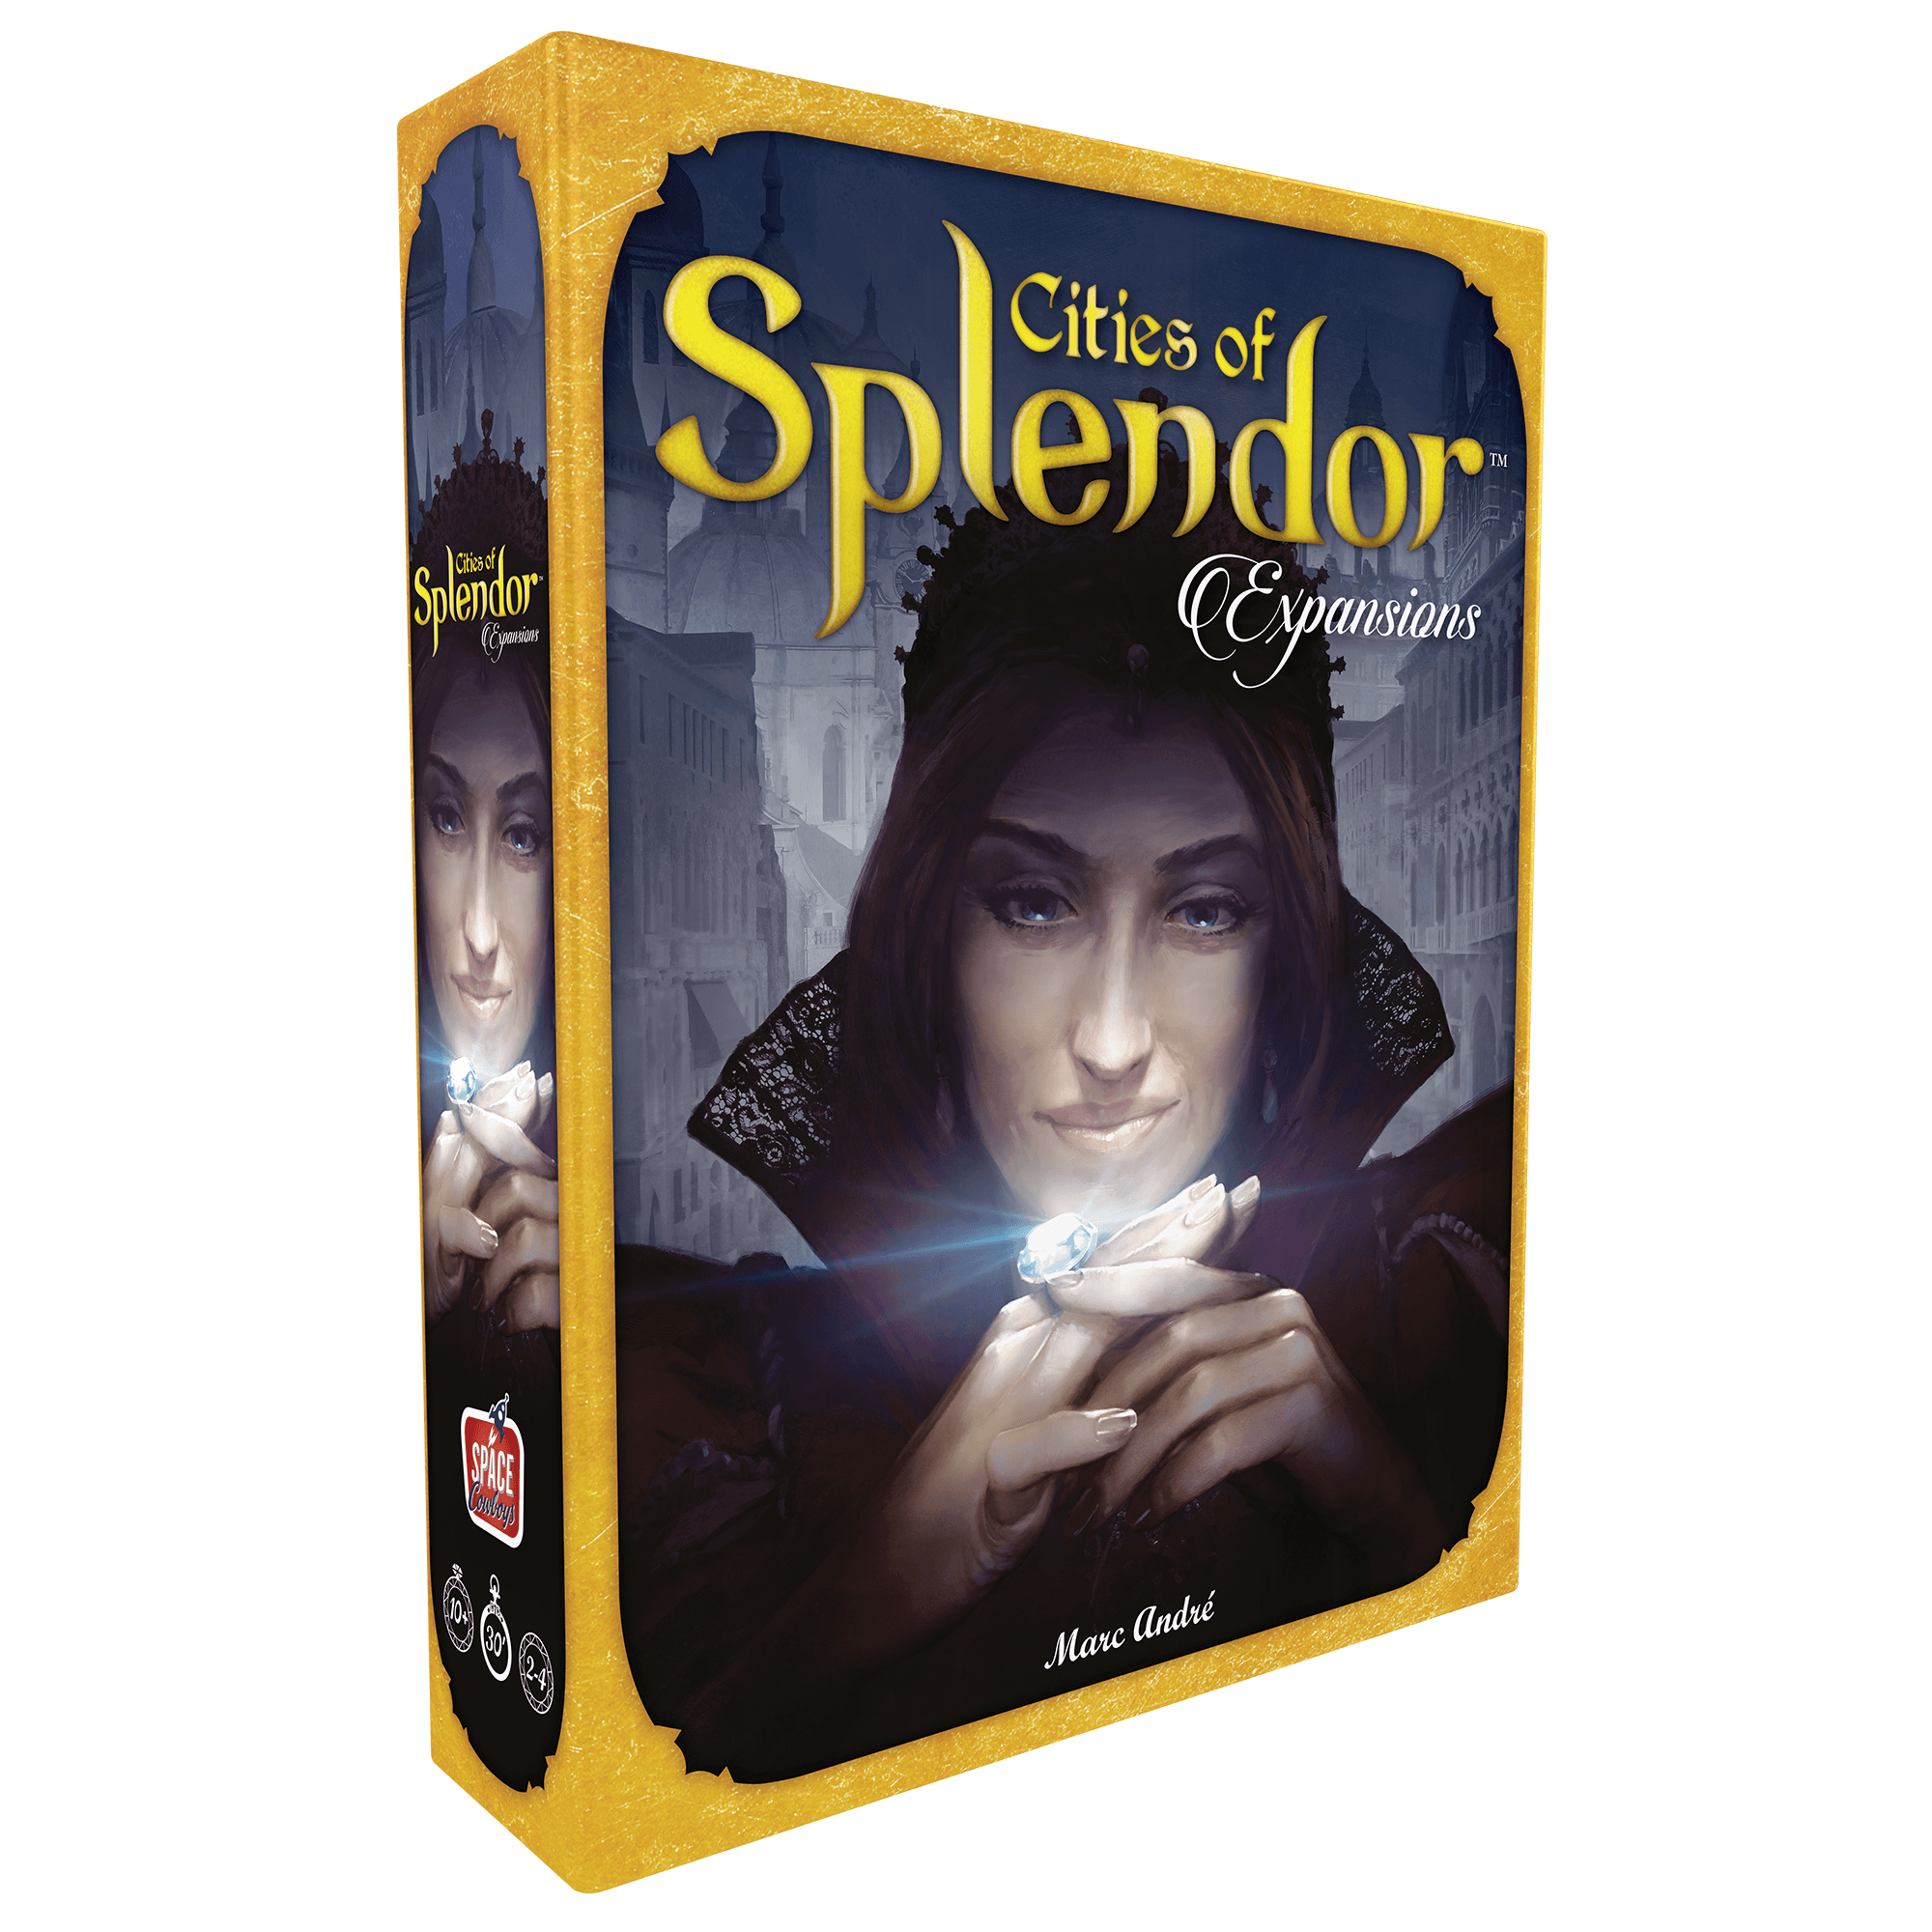 Splendor - Unbox Now